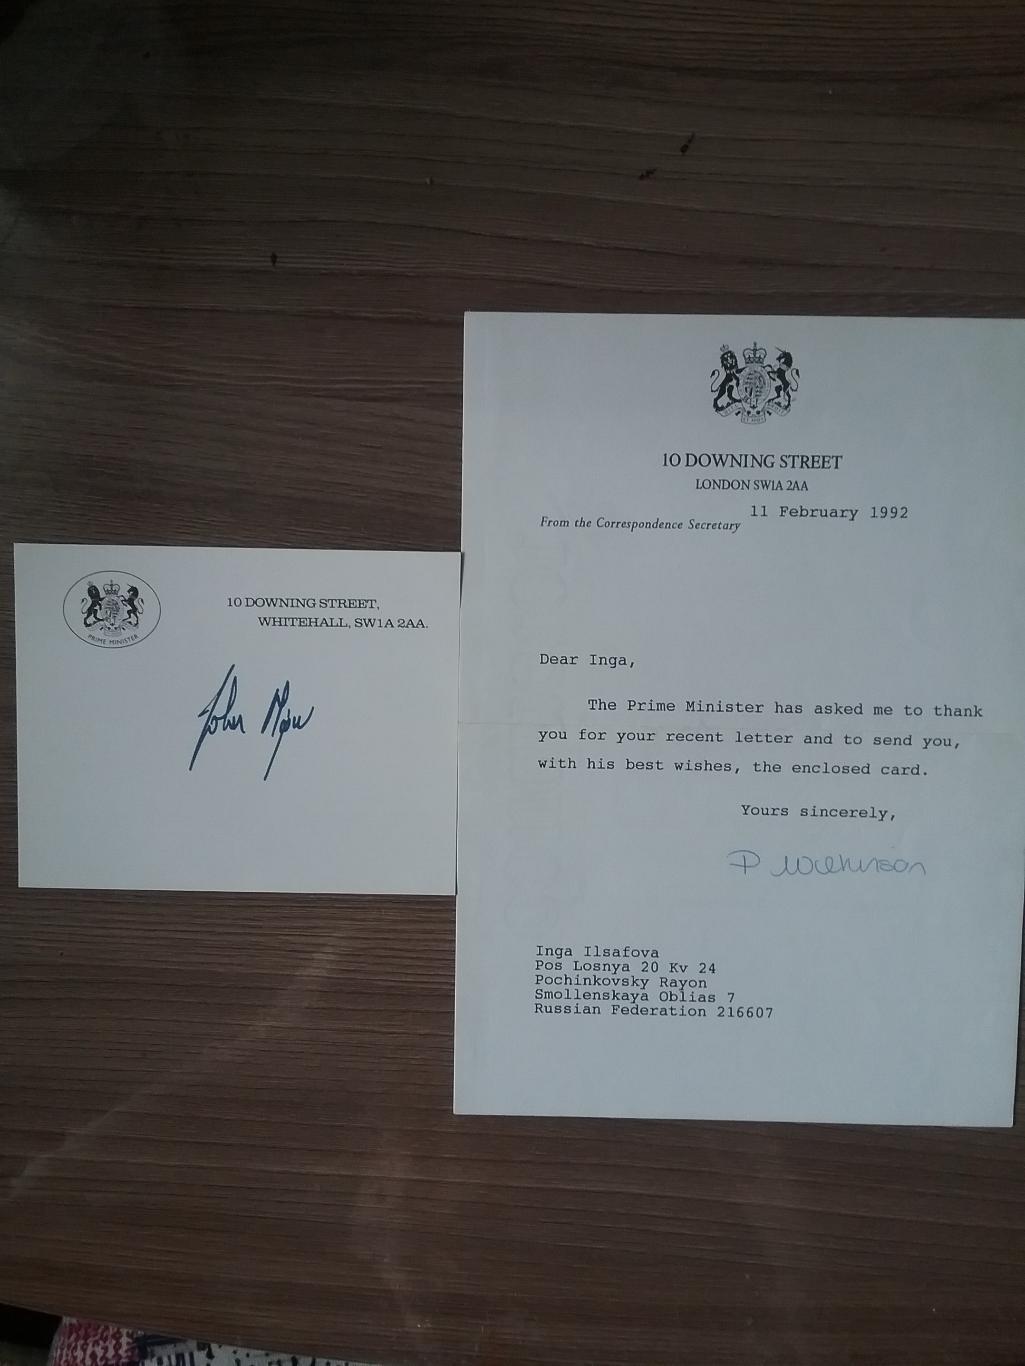 Автограф премьер-министра Великобритании с1990 по 1997гг. Д. Мейджора